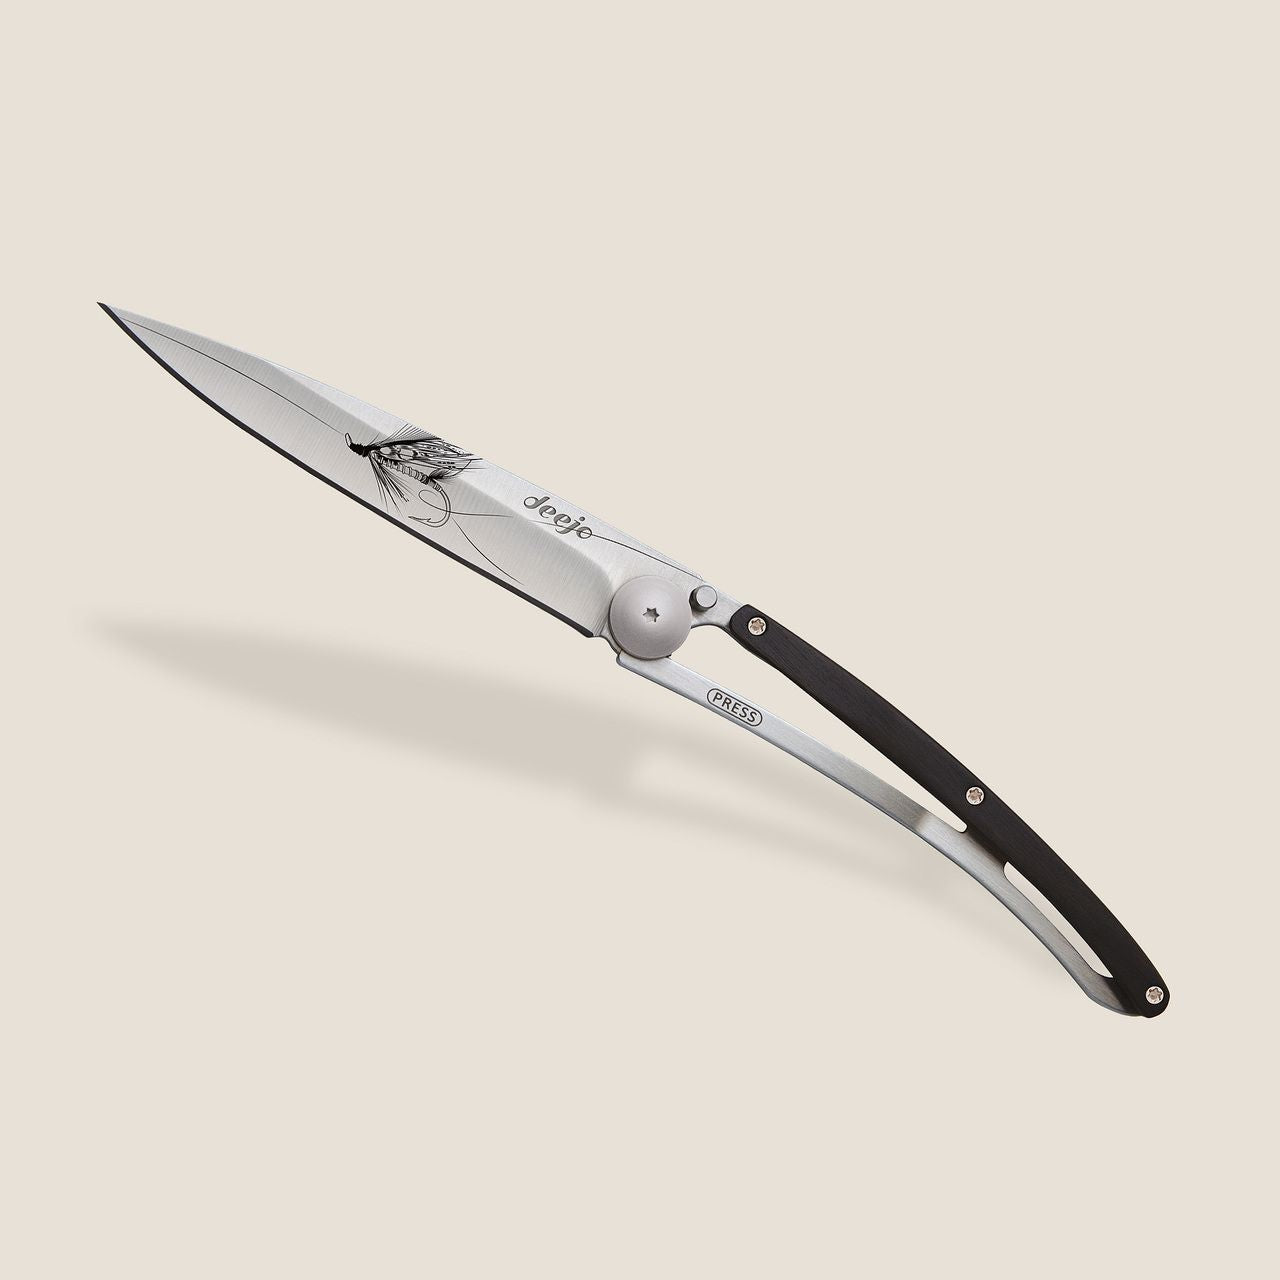 Deejo 37G Ebony Wood / Silver Wilkinson Pocket Knife